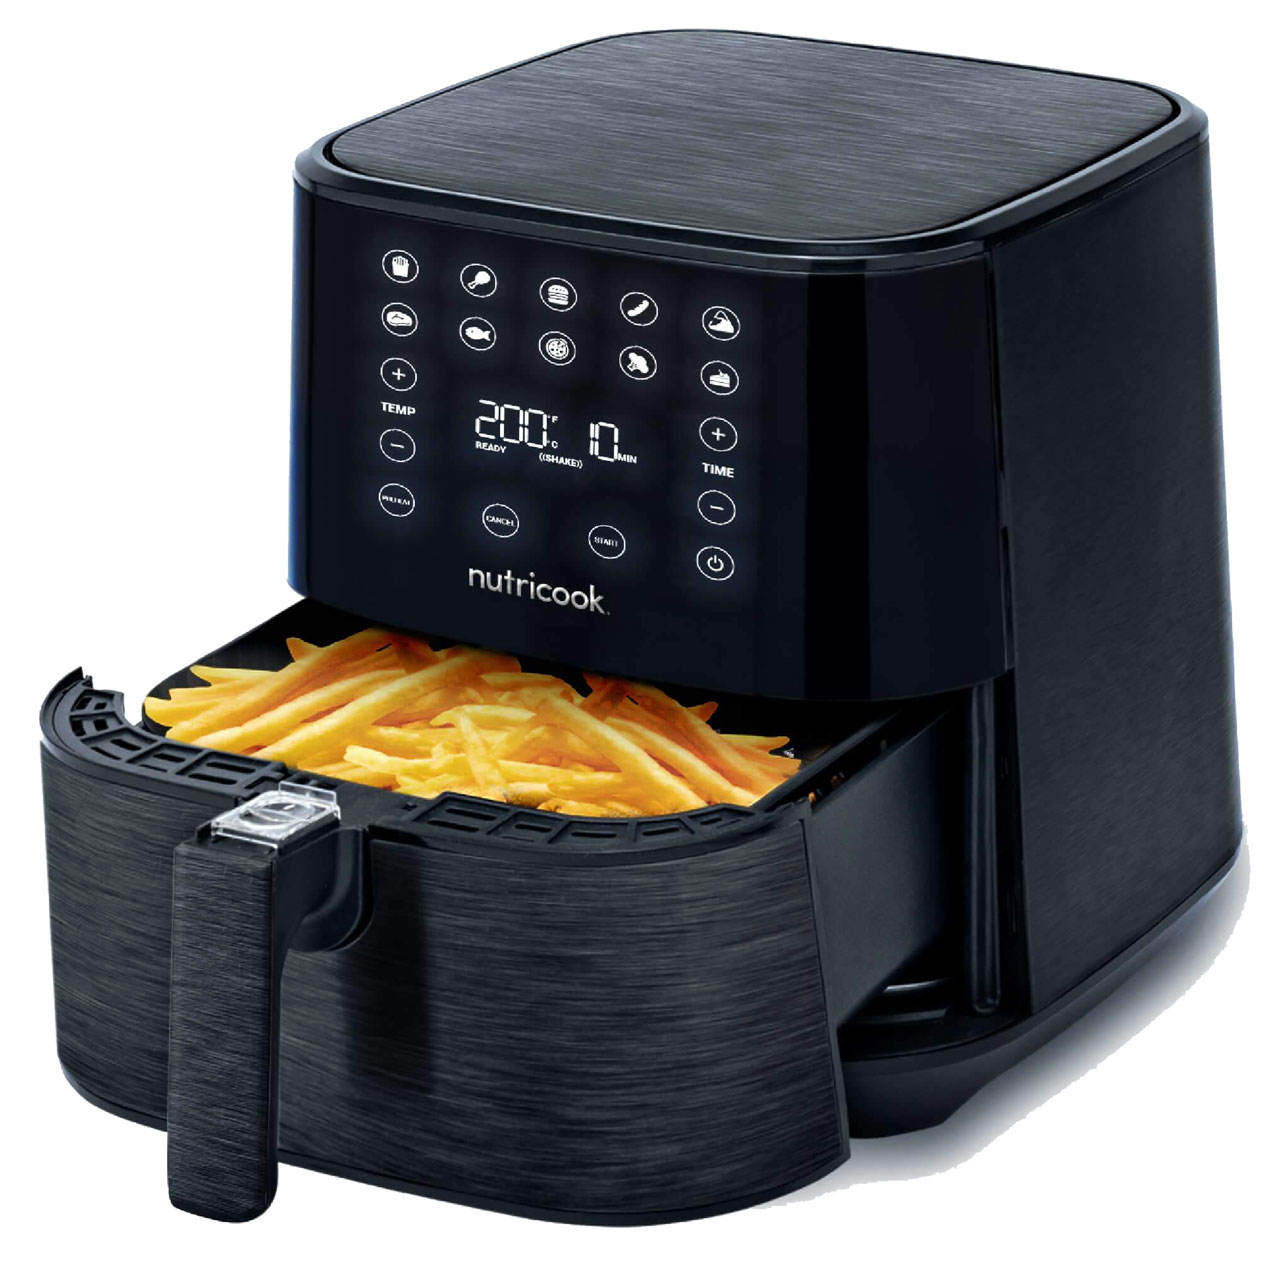 Nutricook - Air Fryer 2 Black | 1700W | 5.5 Liters